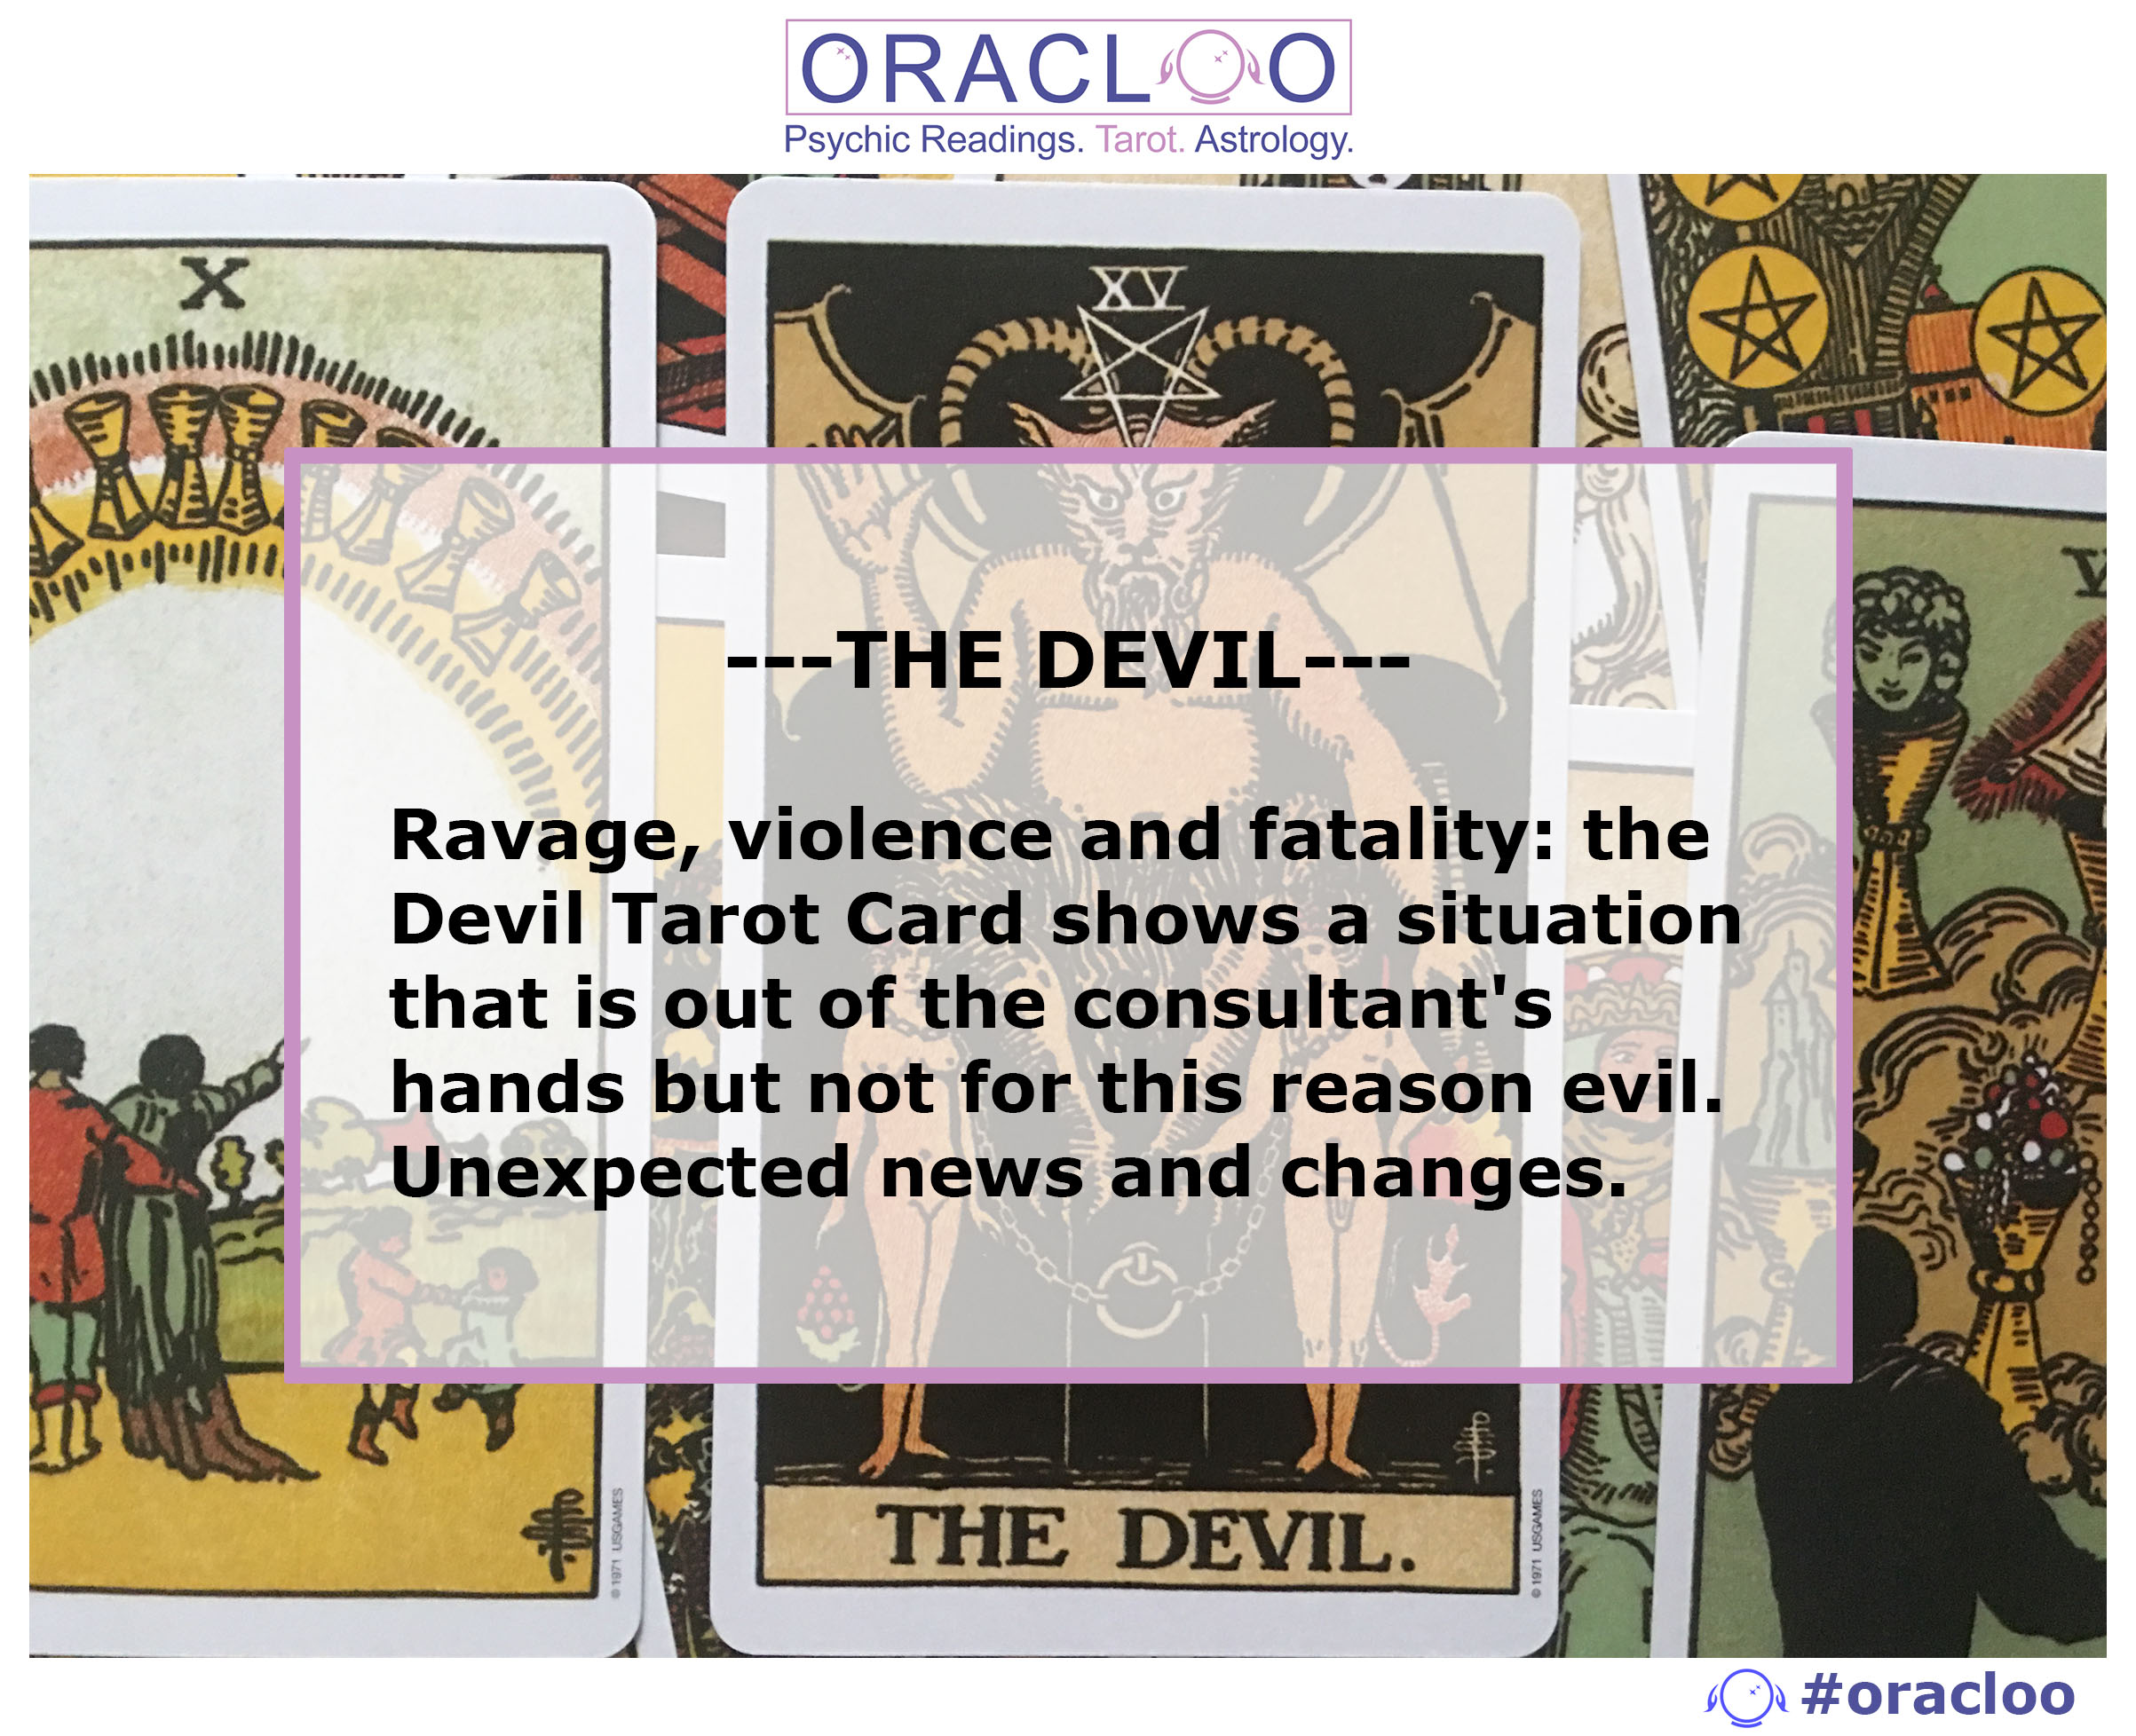 THE DEVIL tarot card